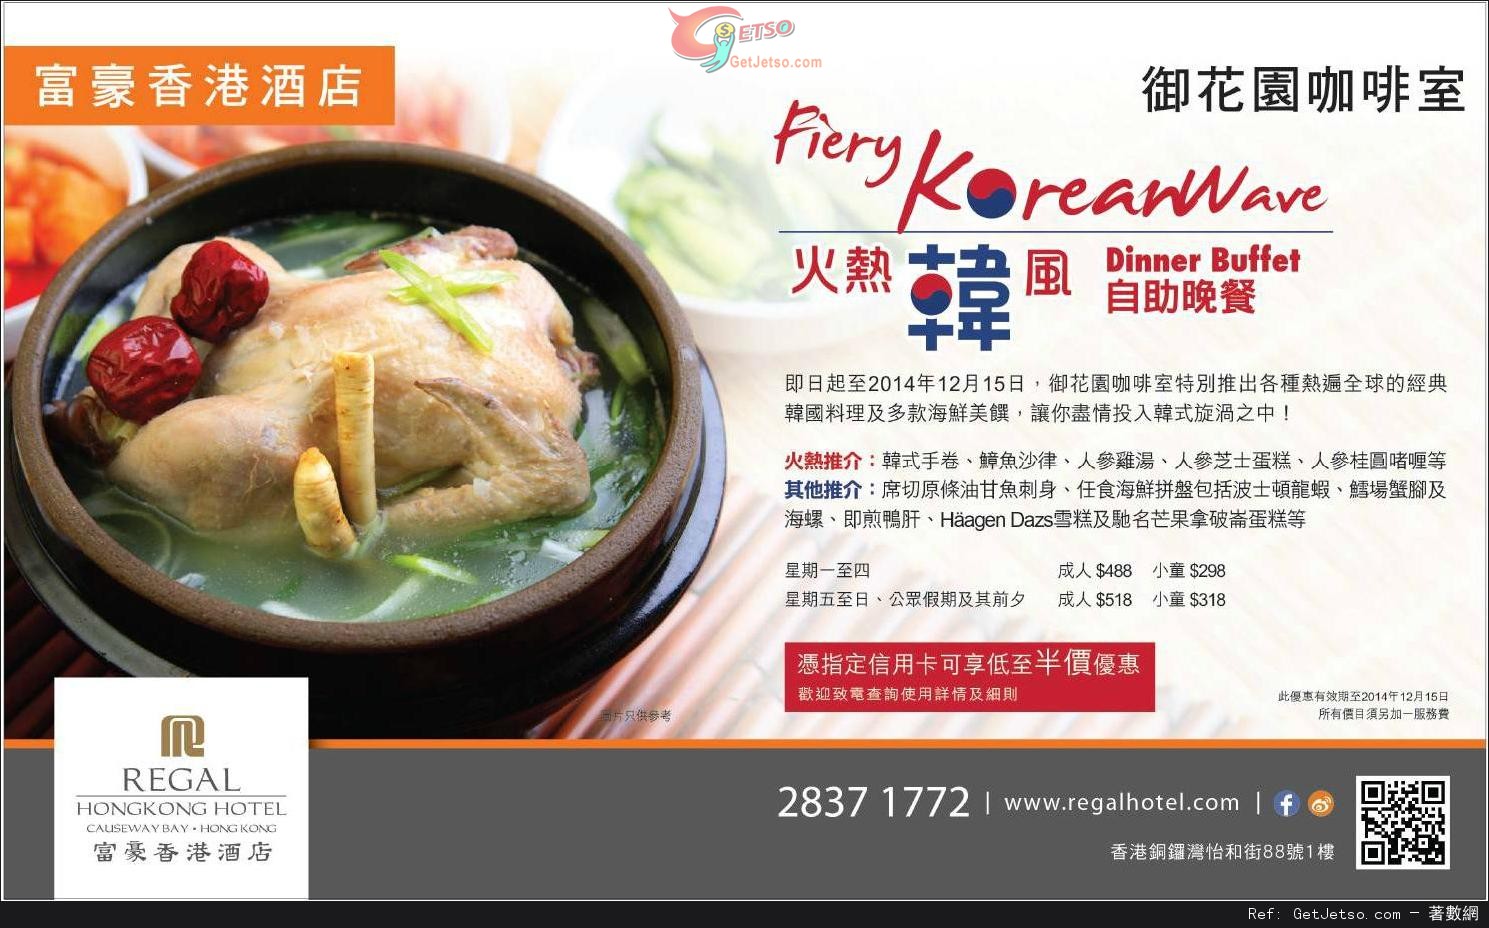 富豪香港酒店火熱韓風自助晚餐低至半價優惠(至14年12月15日)圖片1